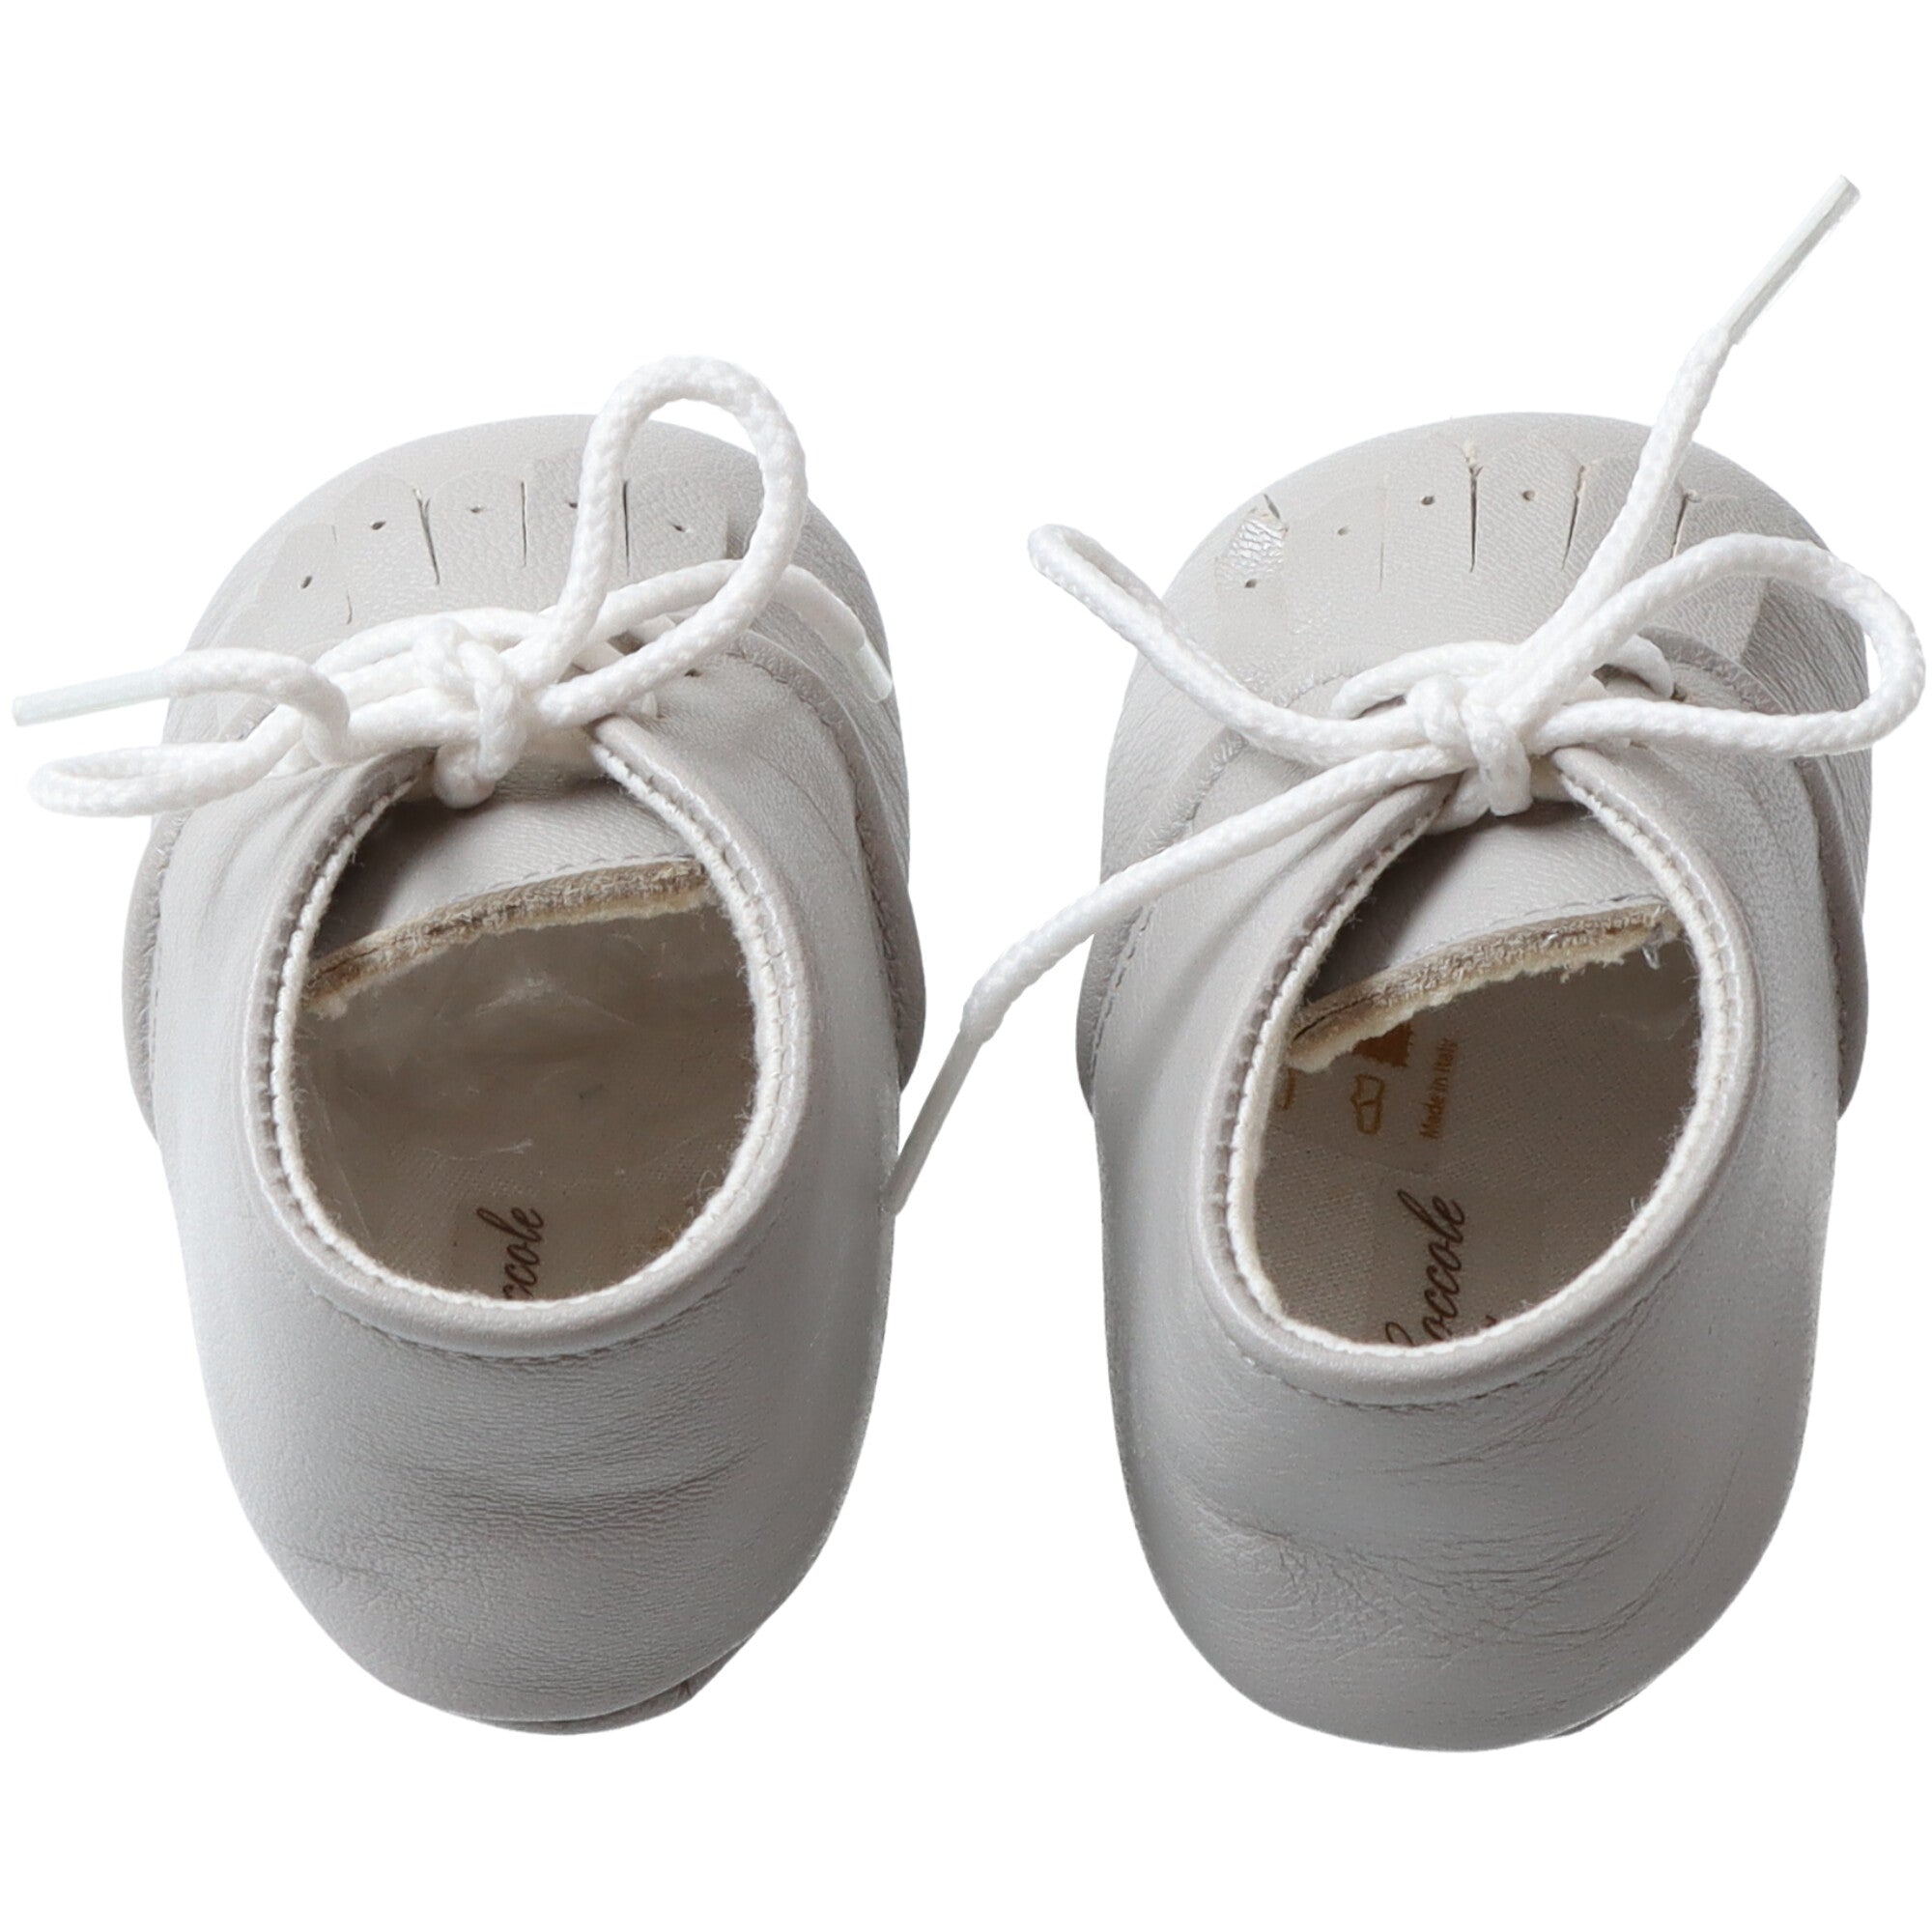 scarpe-basse-in-pelle-colore-grigio-con-frange-modello-elagante-per-neonato